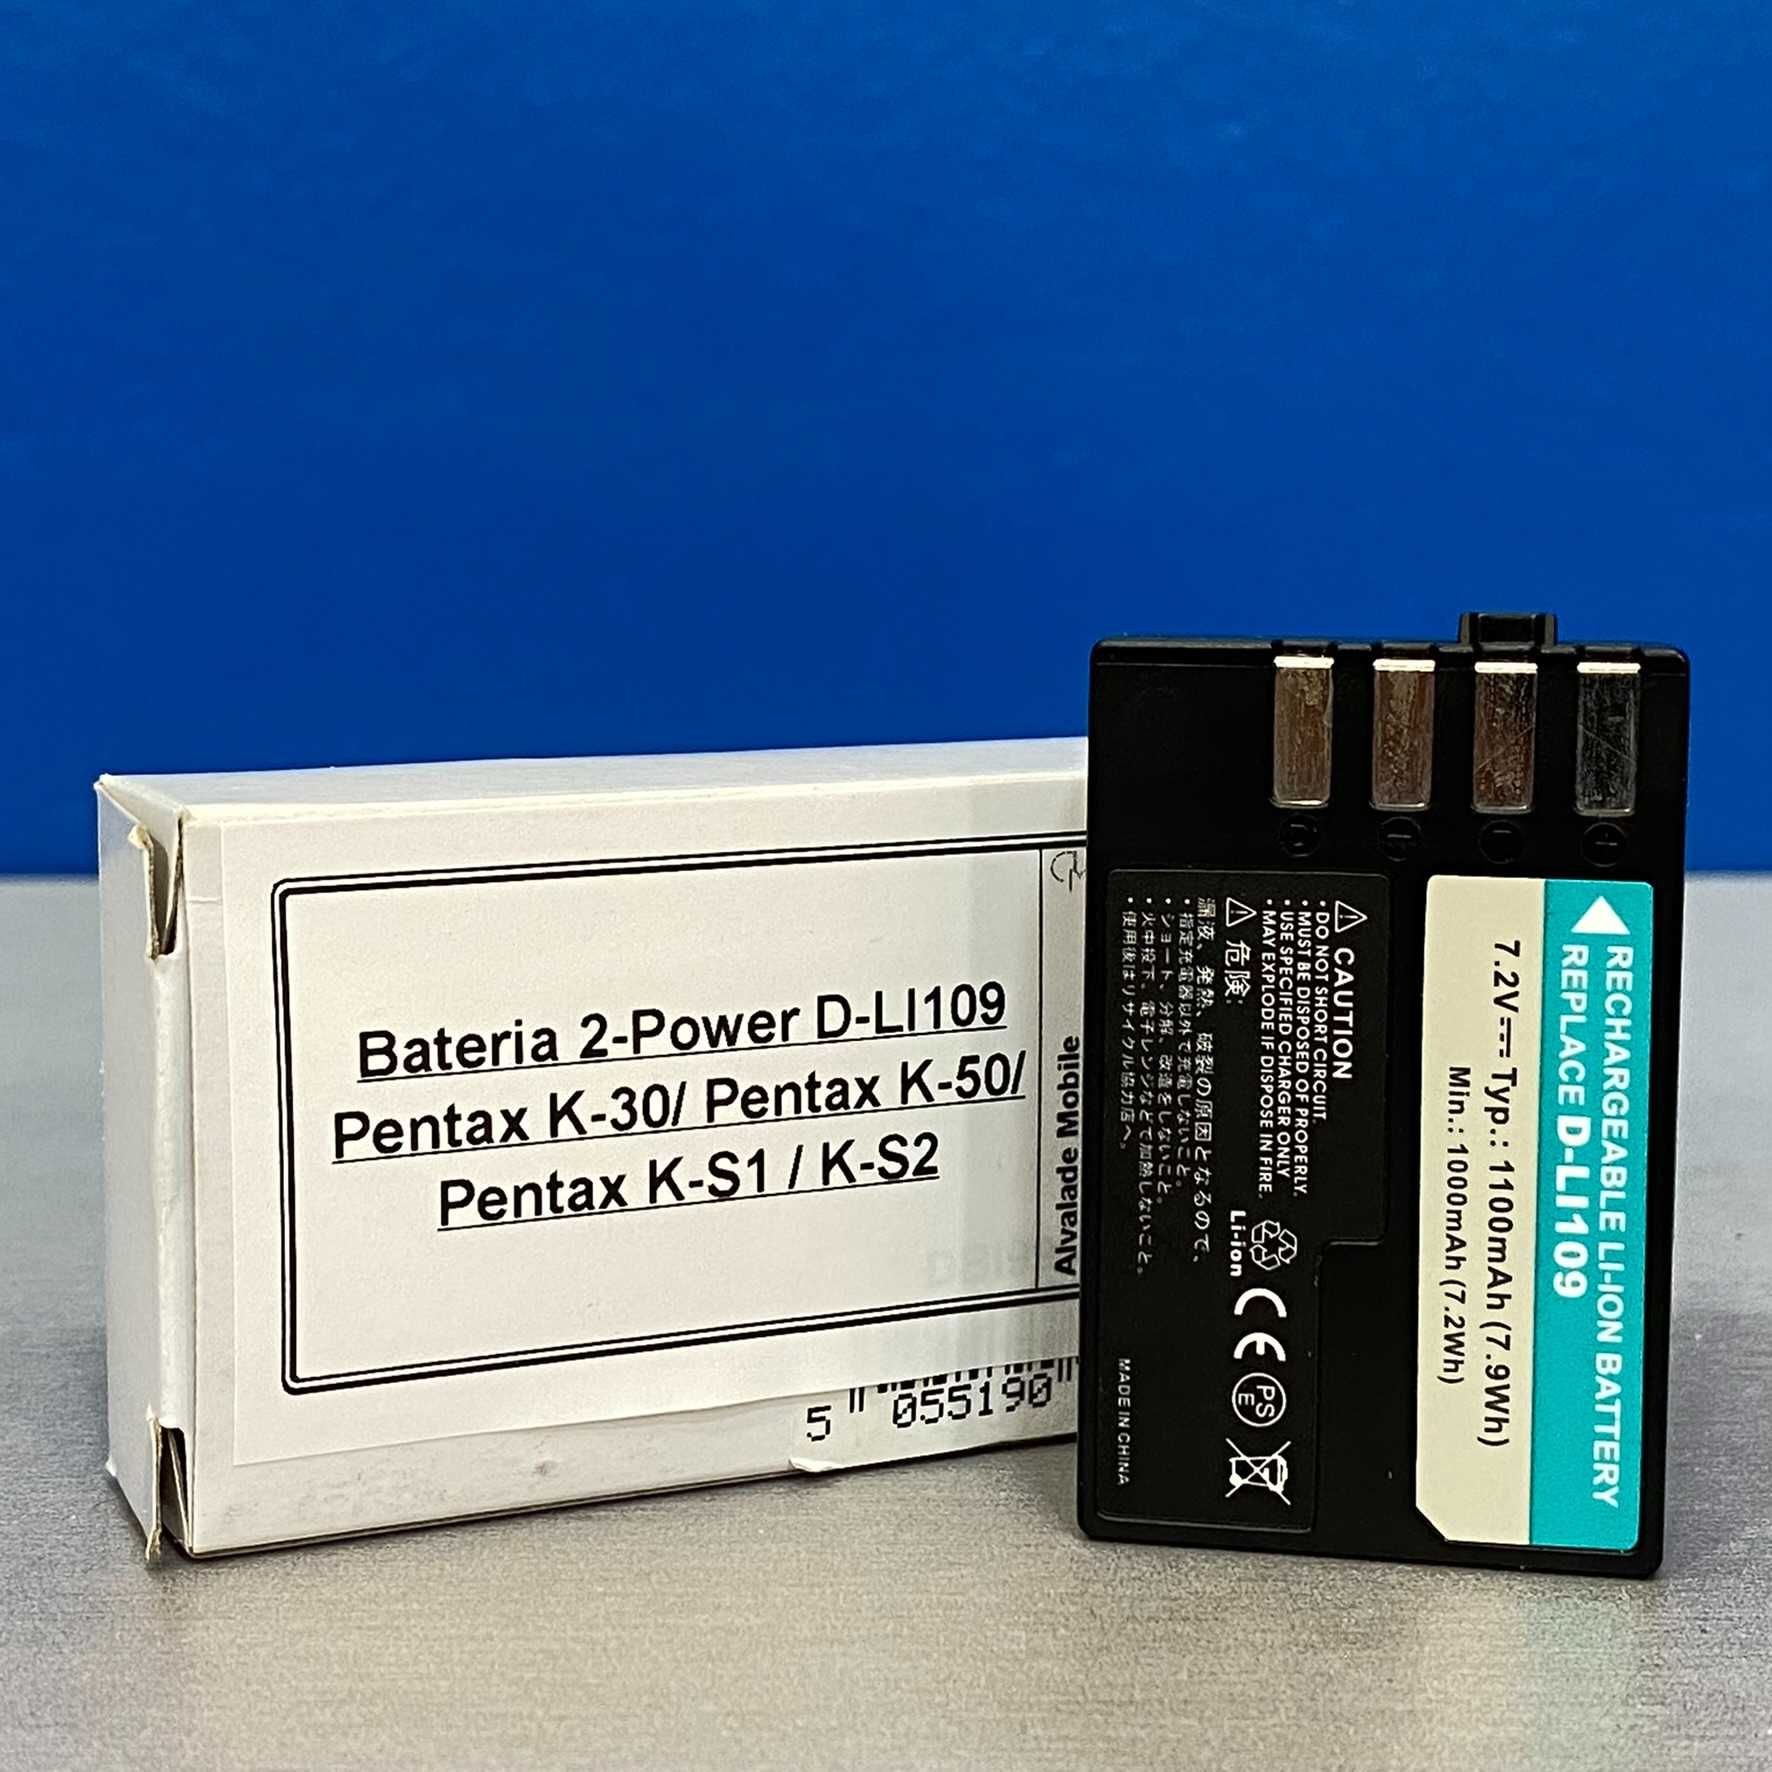 Bateria 2-Power D-LI109 - Pentax K-30/ Pentax K-50/ Pentax K-S1 / K-S2